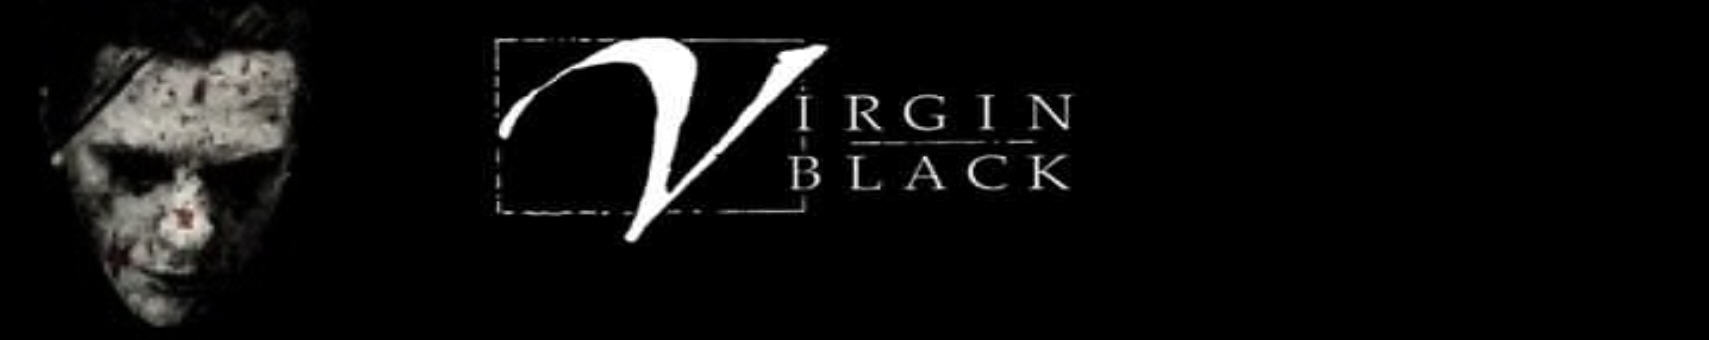 Virgin Black header